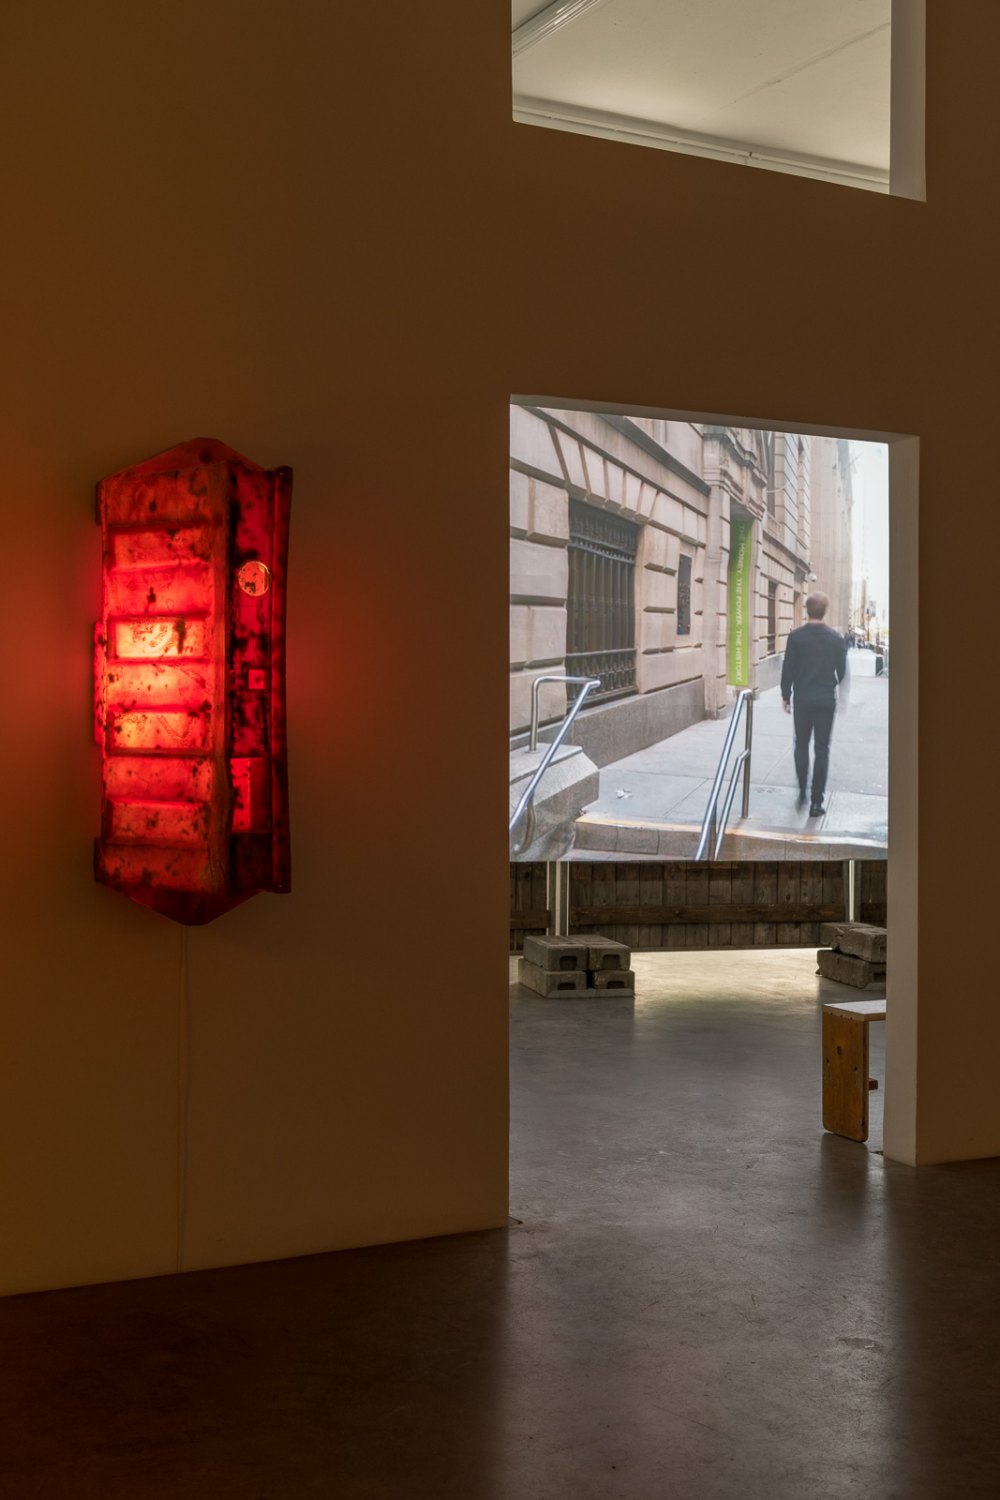 Installation view, Klara Lidén, Berlin Fall, Galerie Neu, Berlin, 2019